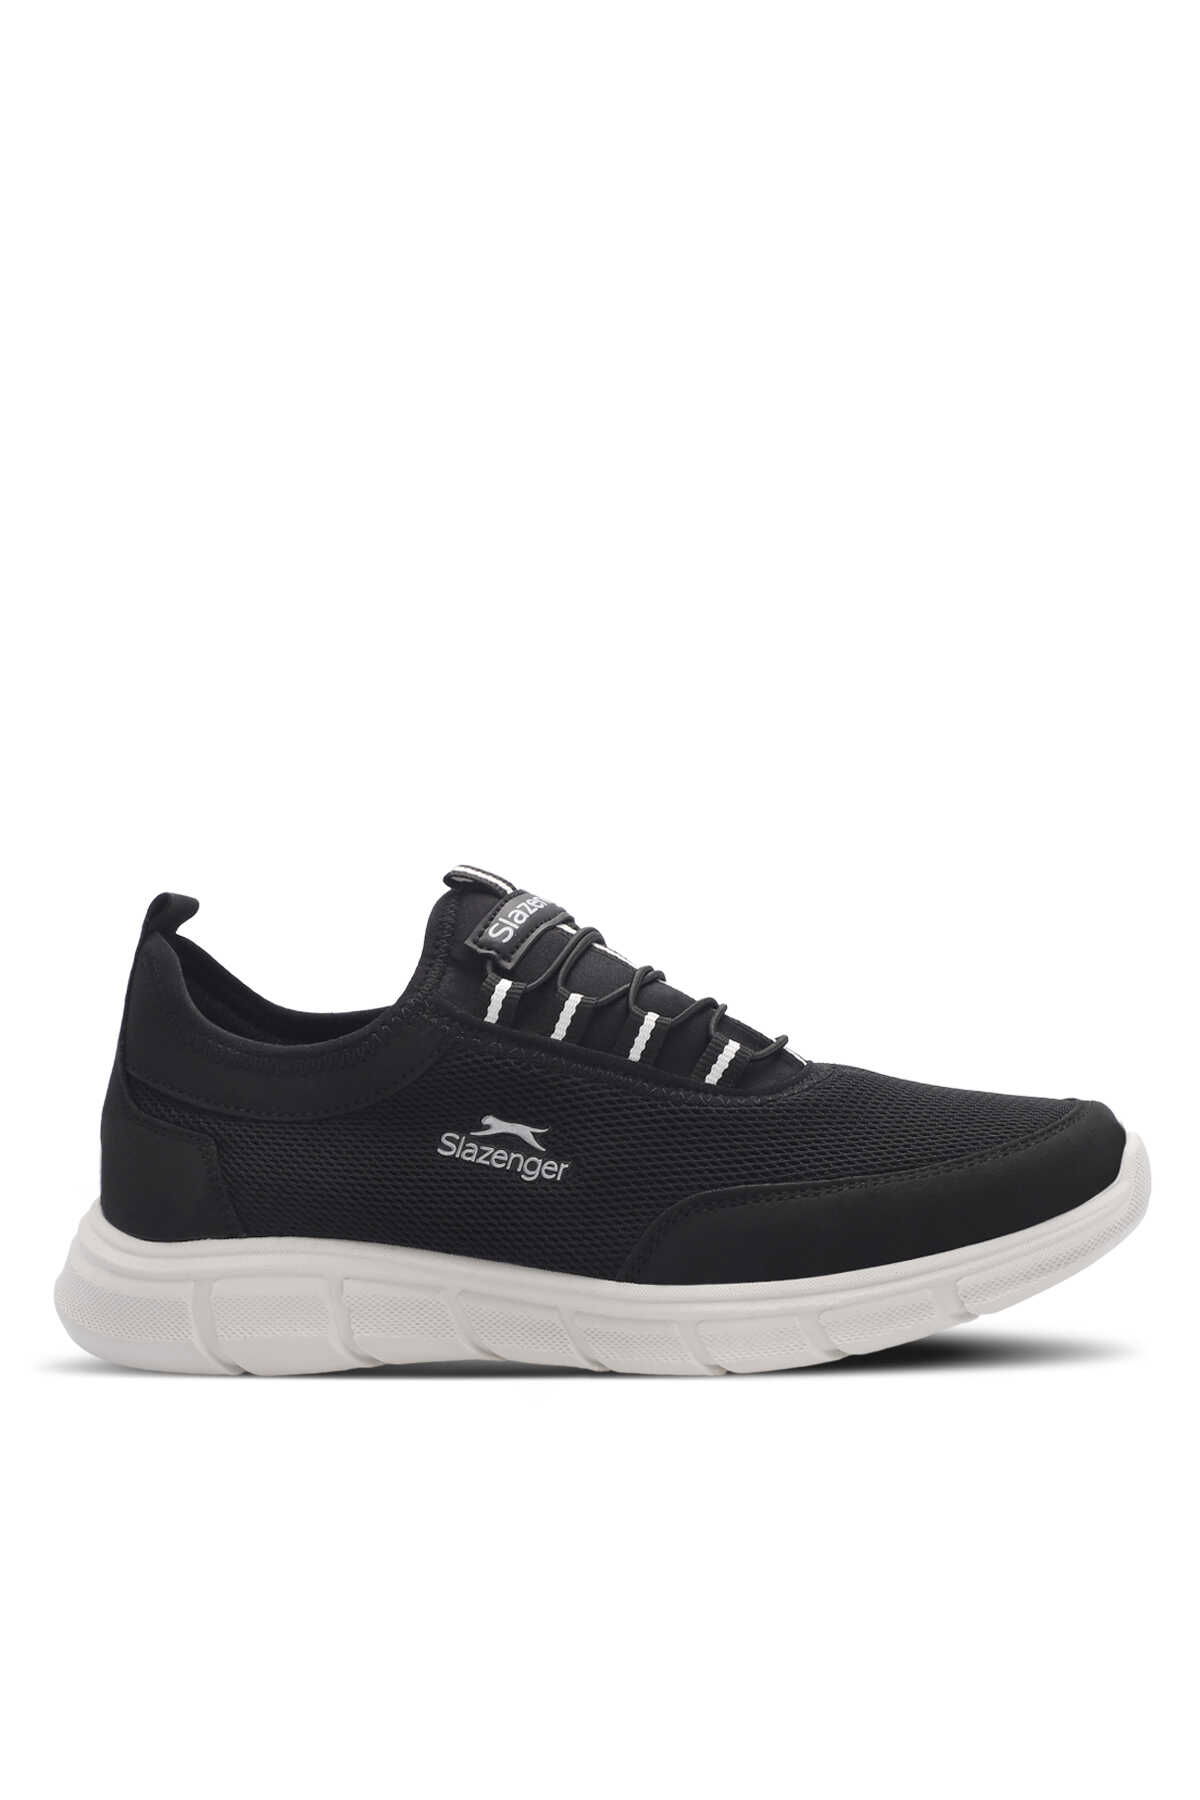 Slazenger - Slazenger ALDO I Erkek Sneaker Ayakkabı Siyah / Beyaz